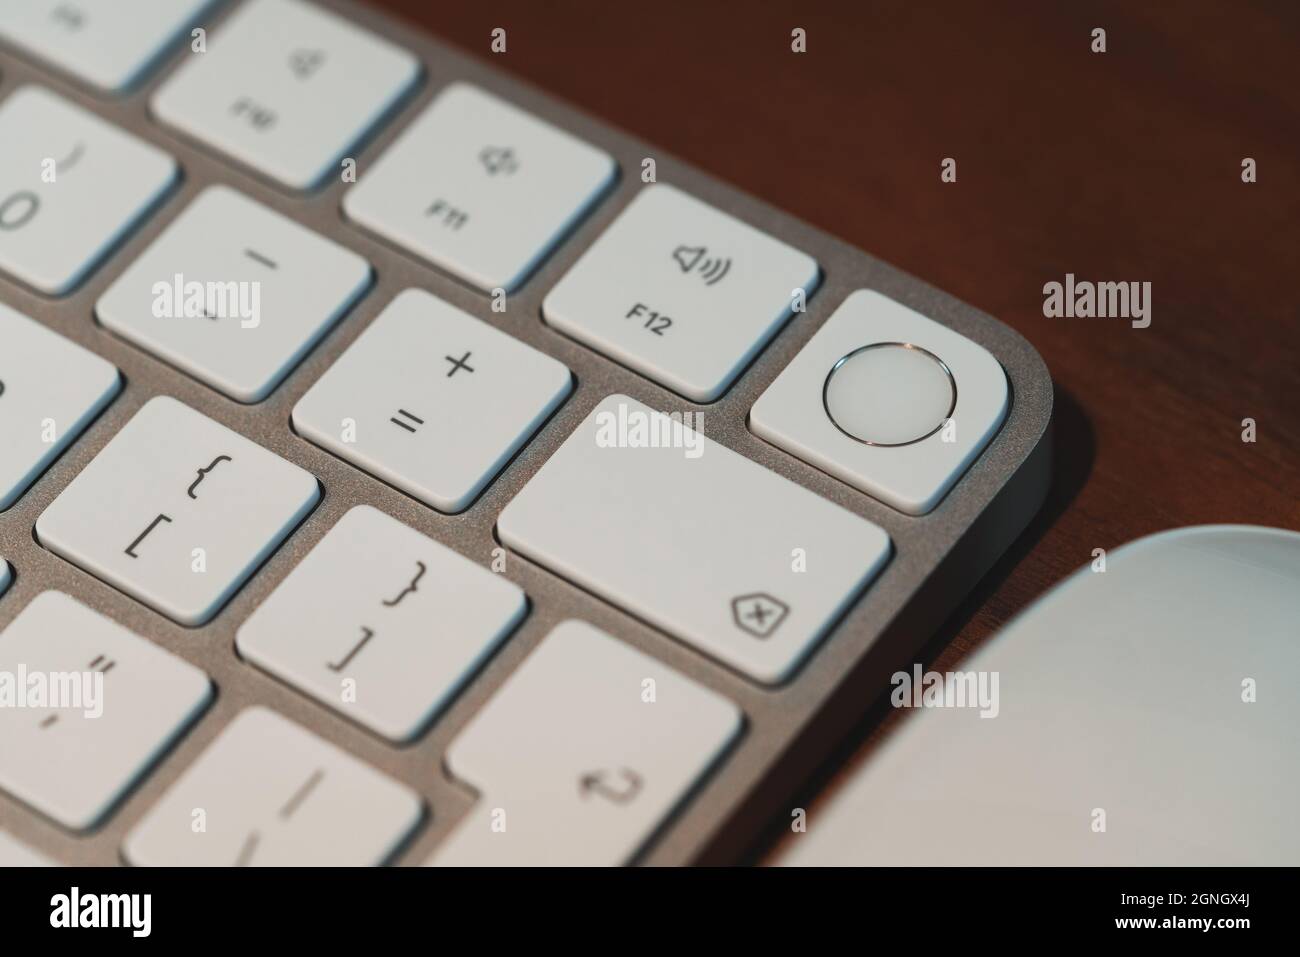 London, Großbritannien - 25. Mai 2021: Nahaufnahme des neuen Apple Magic Keyboards mit Touch ID, das 2021 zusammen mit dem neuen iMac eingeführt wurde. Selektiver Fokus. Stockfoto